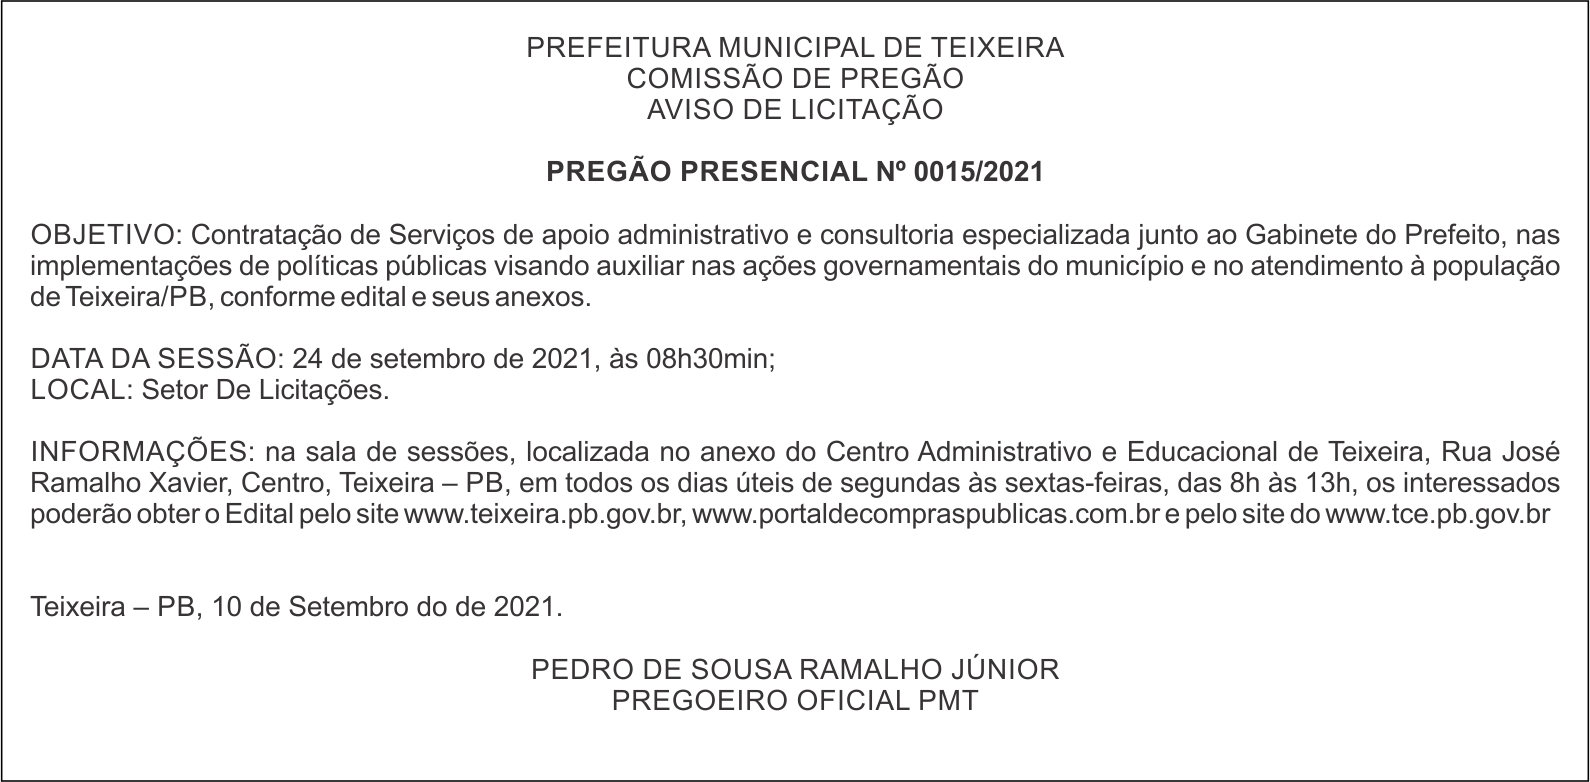 PREFEITURA MUNICIPAL DE TEIXEIRA – AVISO DE LICITAÇÃO – PREGÃO PRESENCIAL Nº 0015/2021